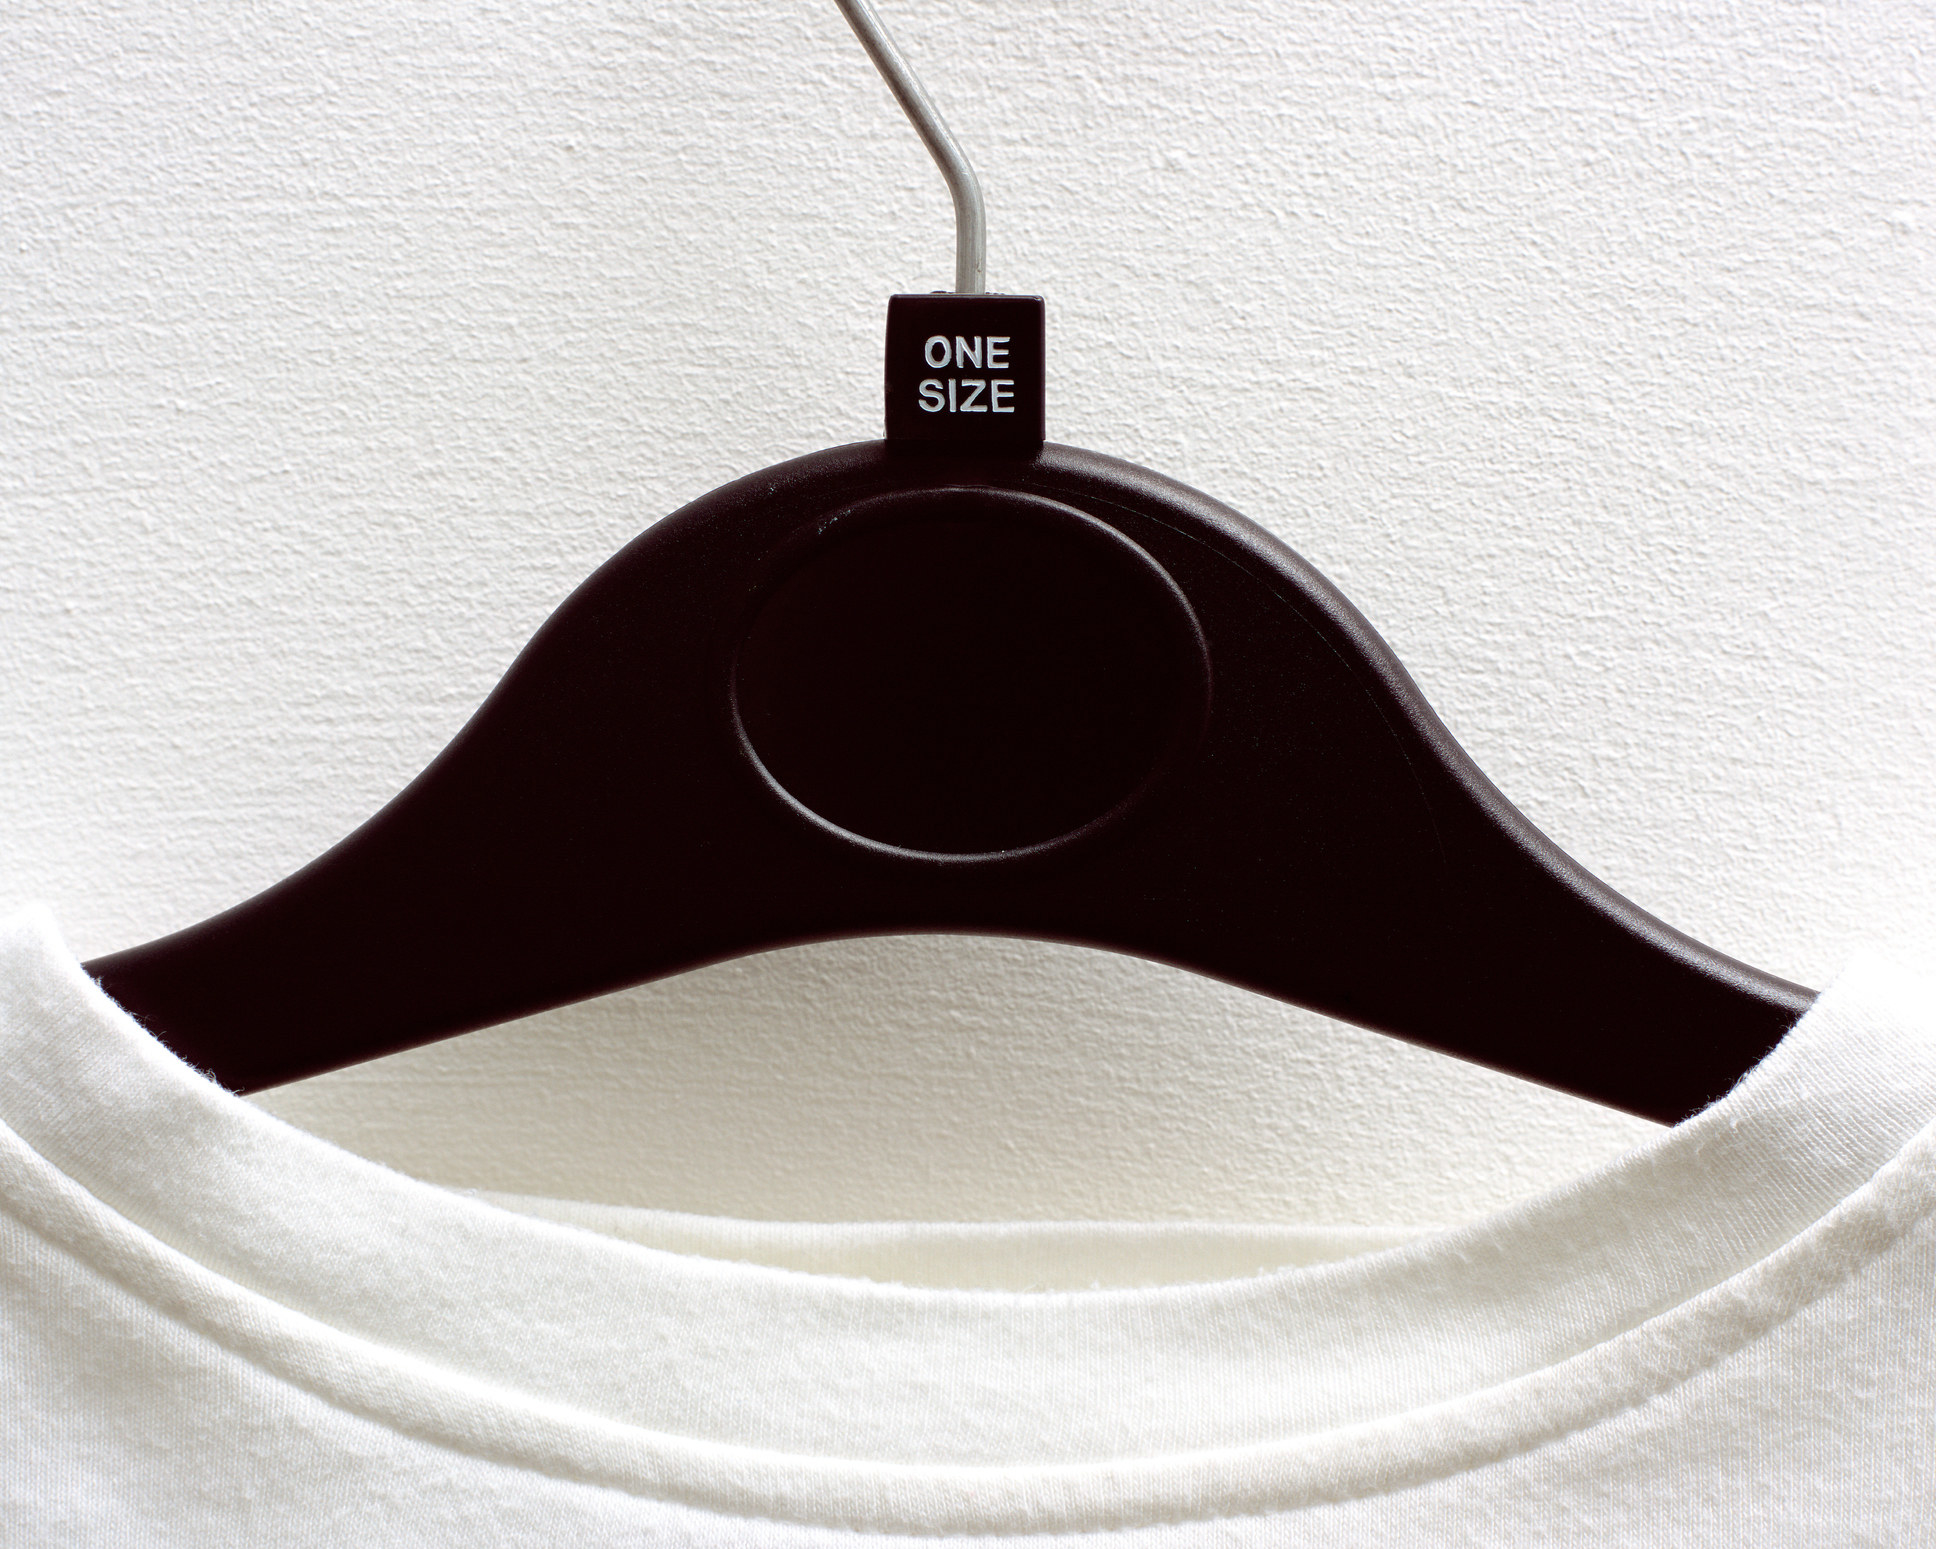 A shirt on a hanger